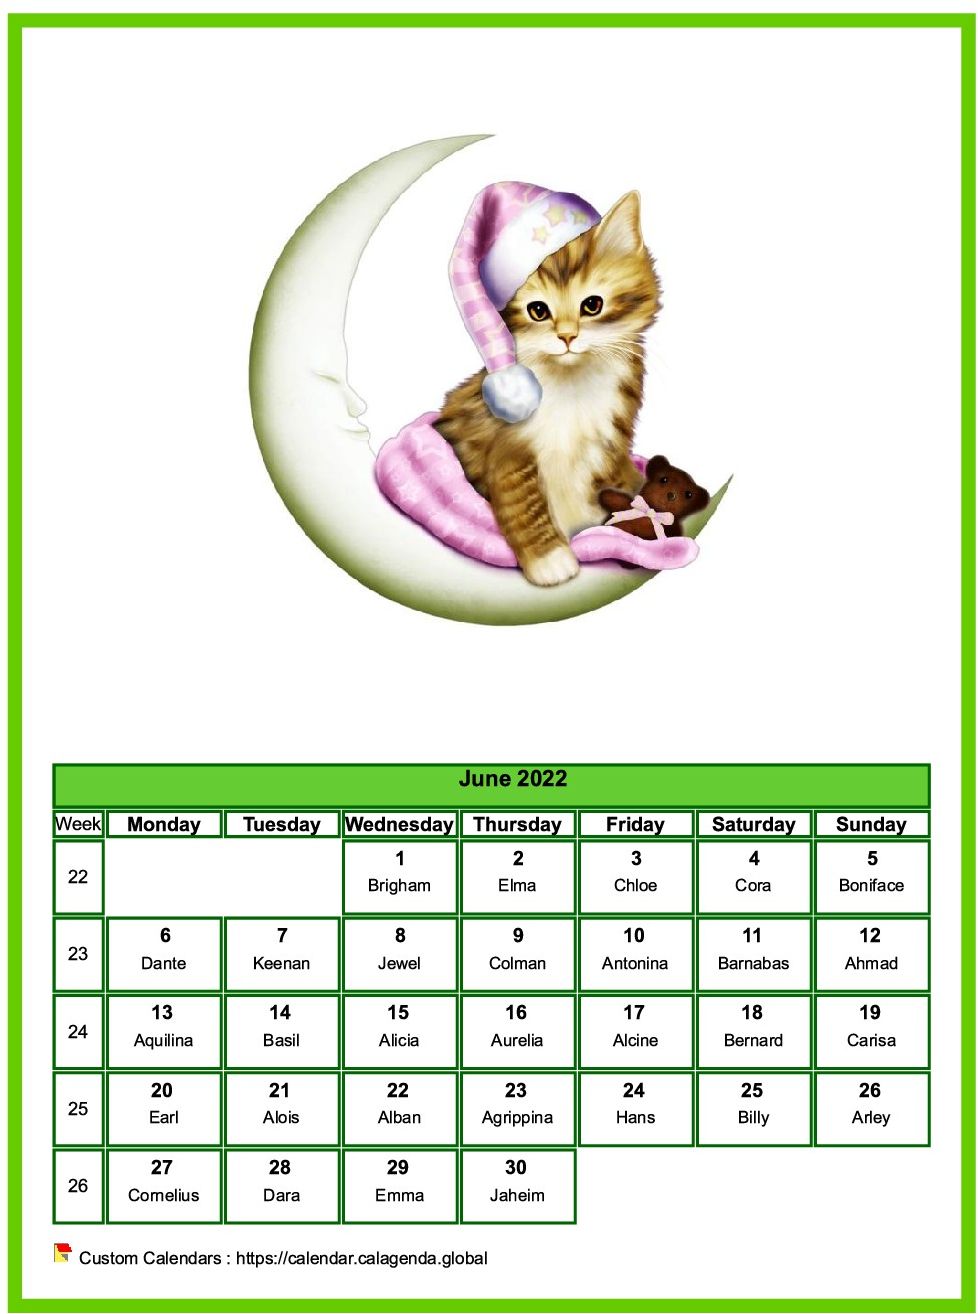 Calendar June 2022 cats